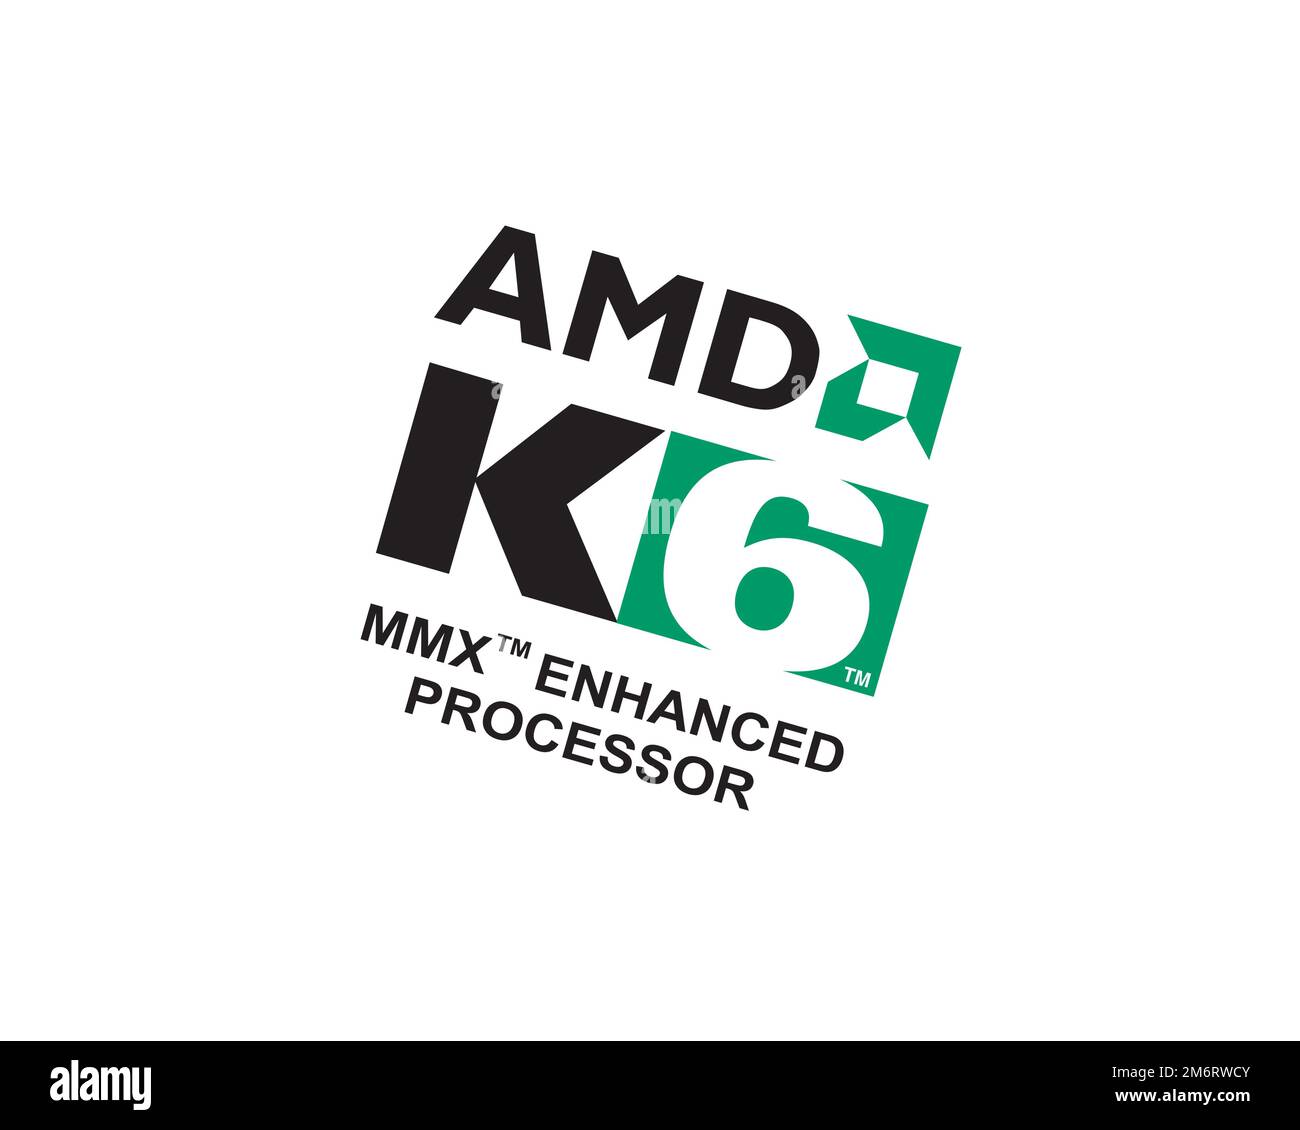 AMD K6, rotated logo, white background B Stock Photo